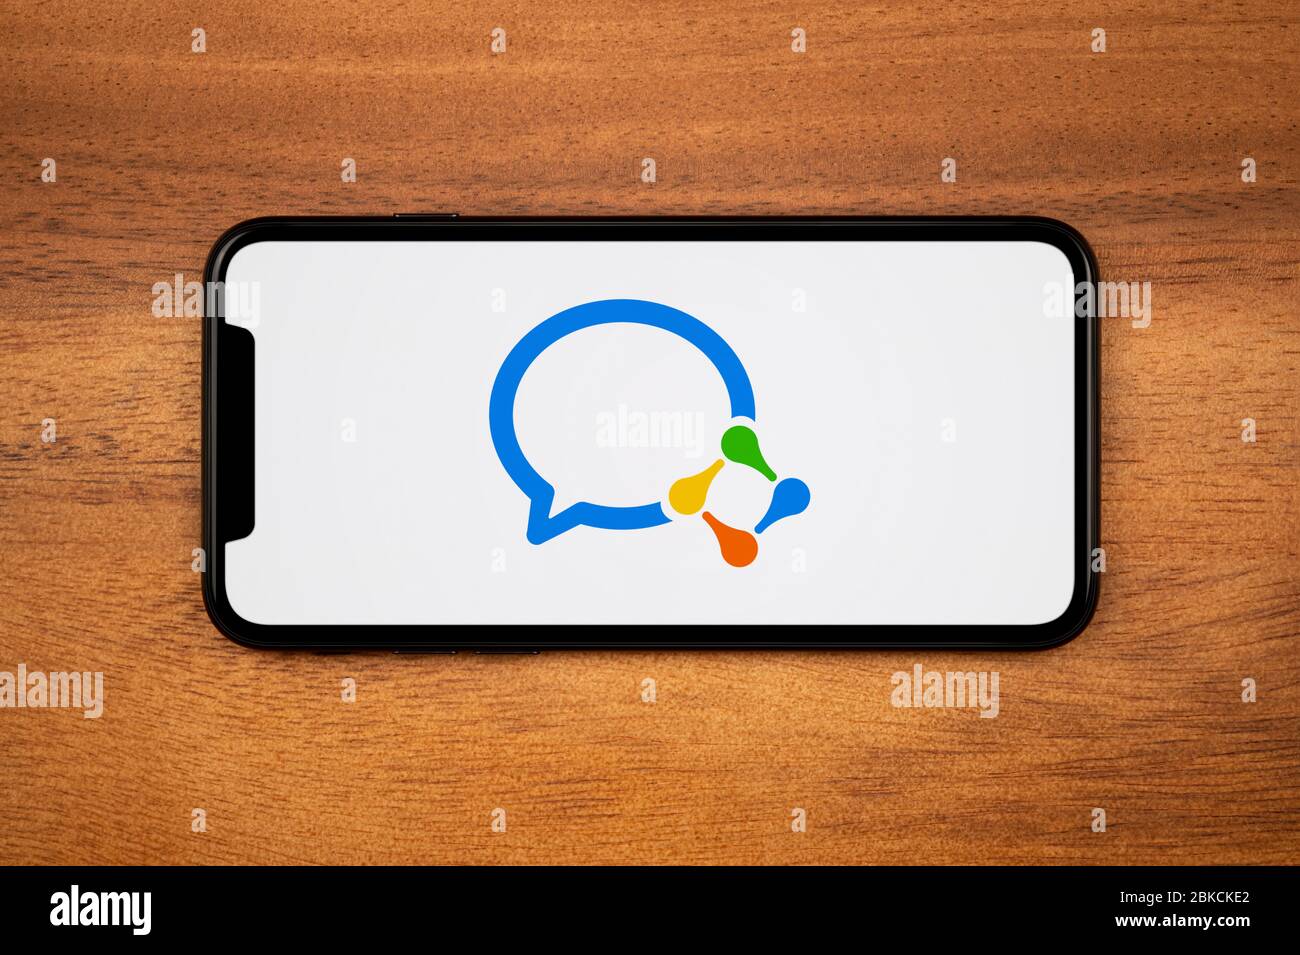 Un smartphone affichant le logo WeChat Work repose sur une table en bois ordinaire (usage éditorial uniquement). Banque D'Images